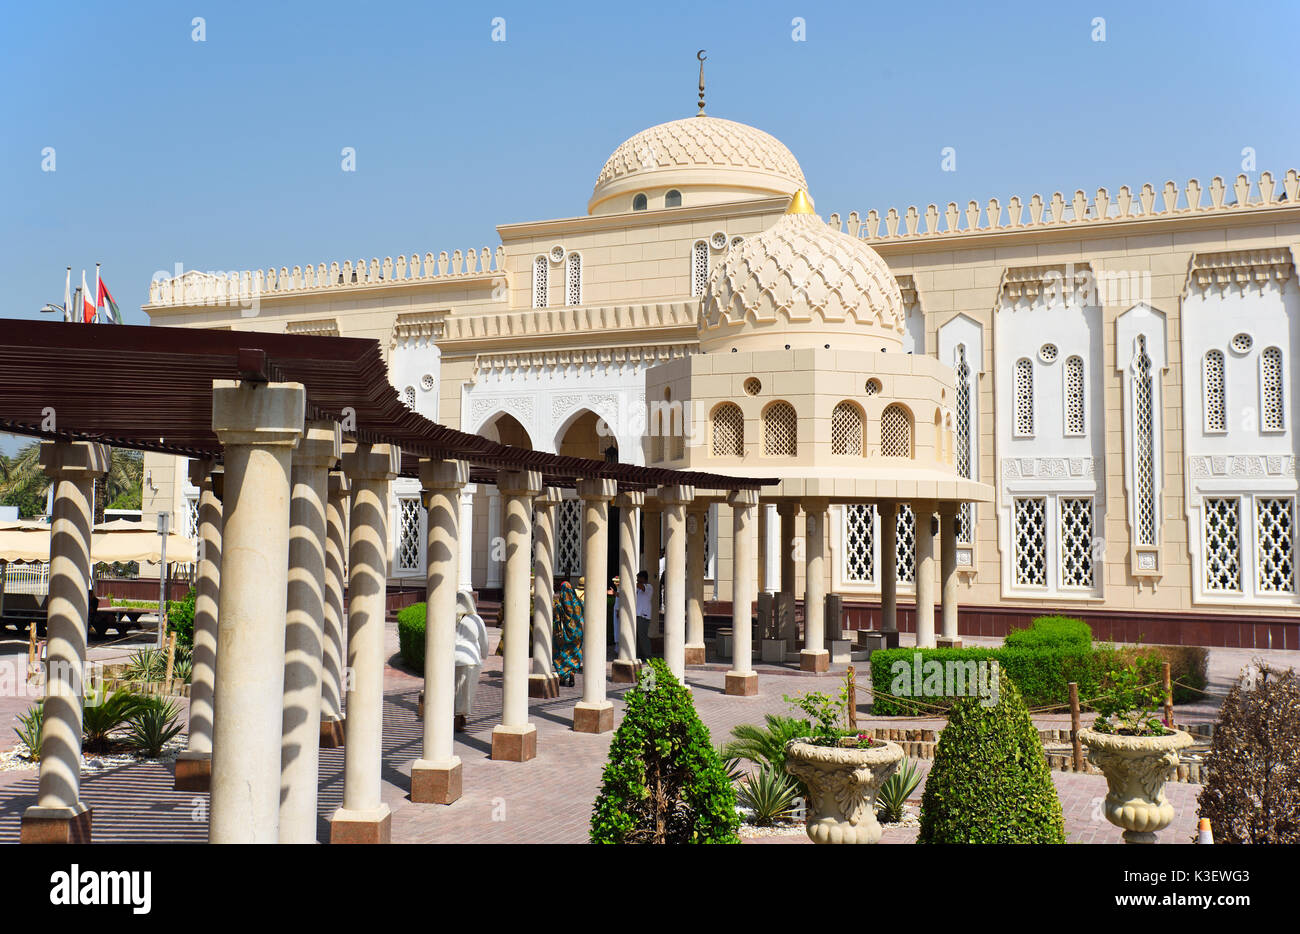 Dubai, Vereinigte Arabische Emirate - Okt 8, 2016: Jumeirah Grand Mosque in Dubai, der Jumeirah Moschee ist die einzige Moschee in Dubai, der zur öffentlichkeit geöffnet ist Stockfoto